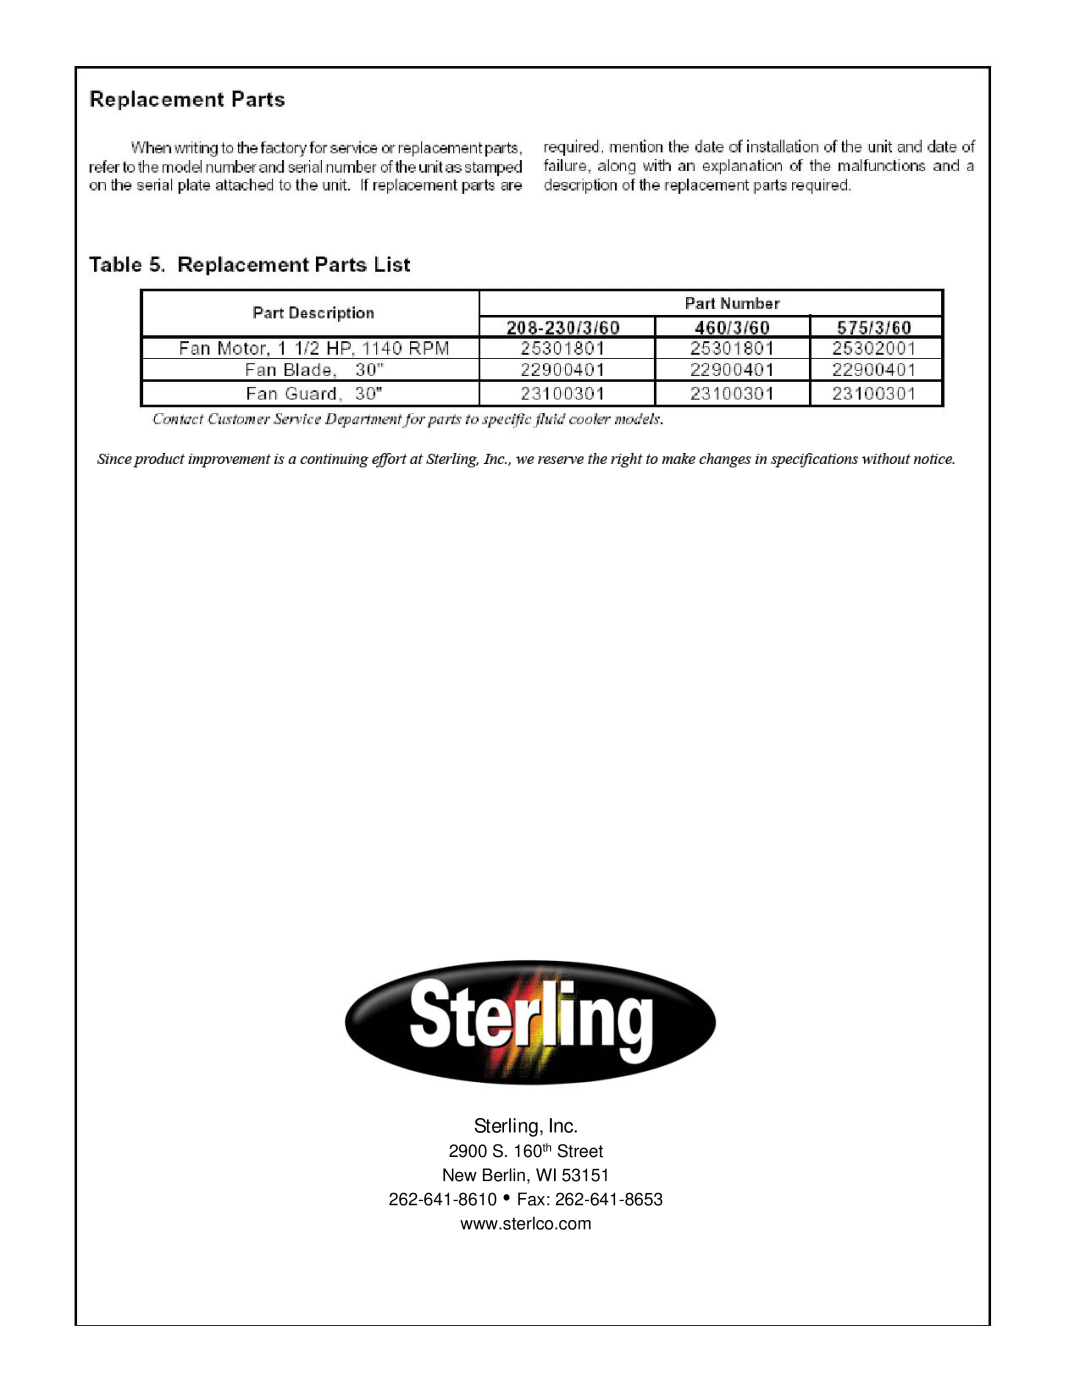 Sterling SC3-600, 25001301 warranty Sterling, Inc, 2900 S. 160th Street New Berlin, WI 